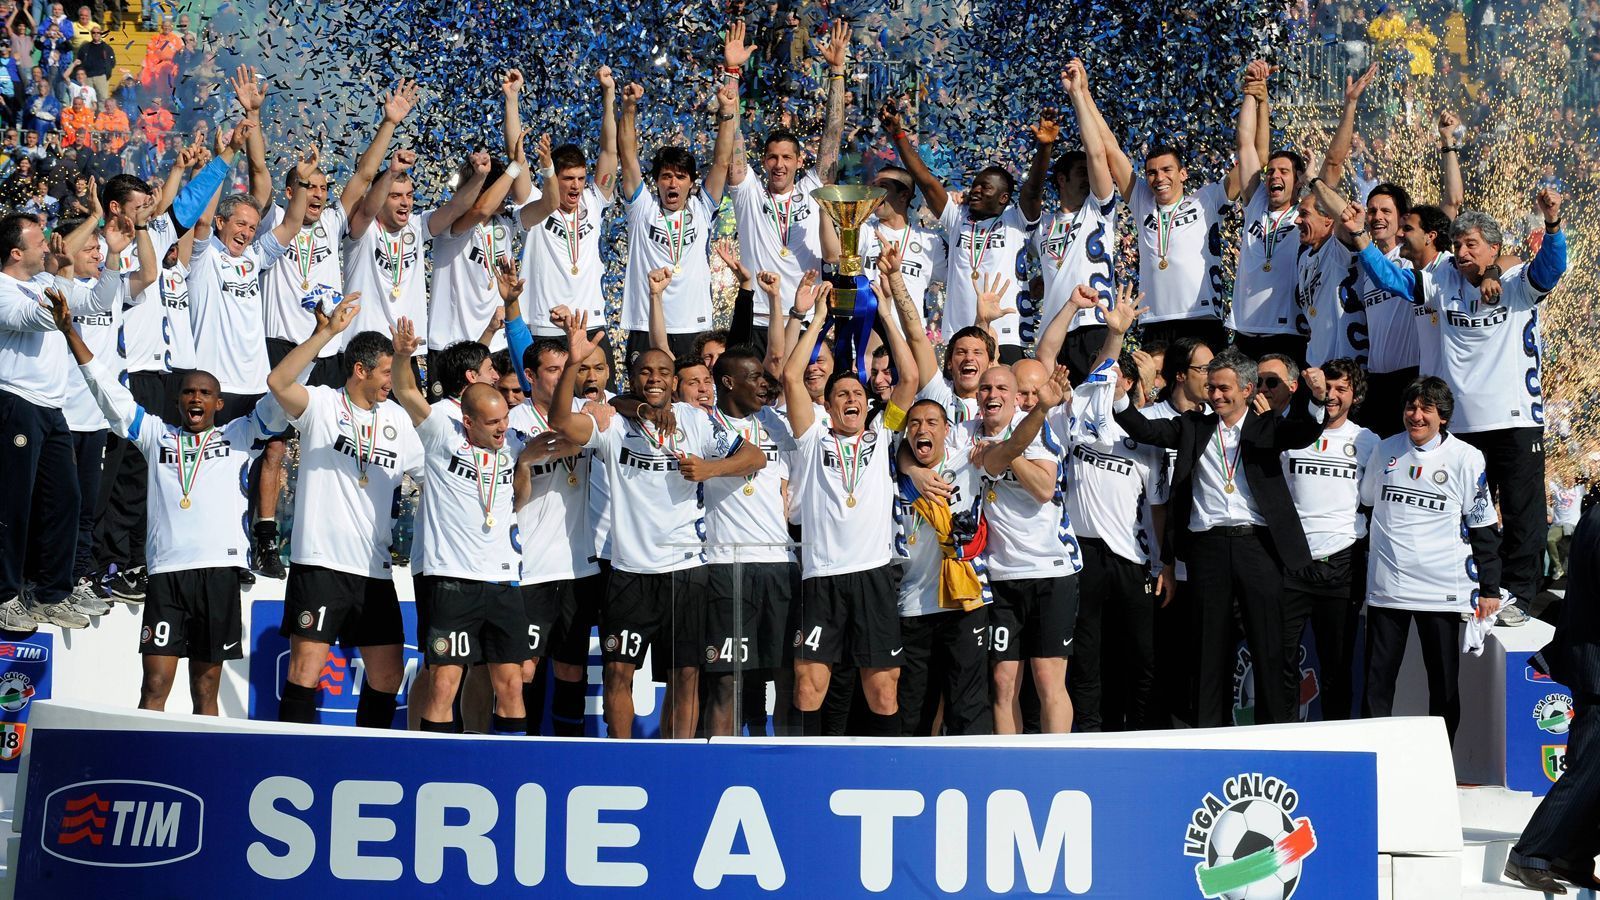 
                <strong>Platz 9 (geteilt) - Italien: Inter Mailand </strong><br>
                &#x2022; Anzahl der Meistertitel in Serie: 5 - <br>&#x2022; Zeitpunkt der Meister-Serie: 2006-2010<br>
              